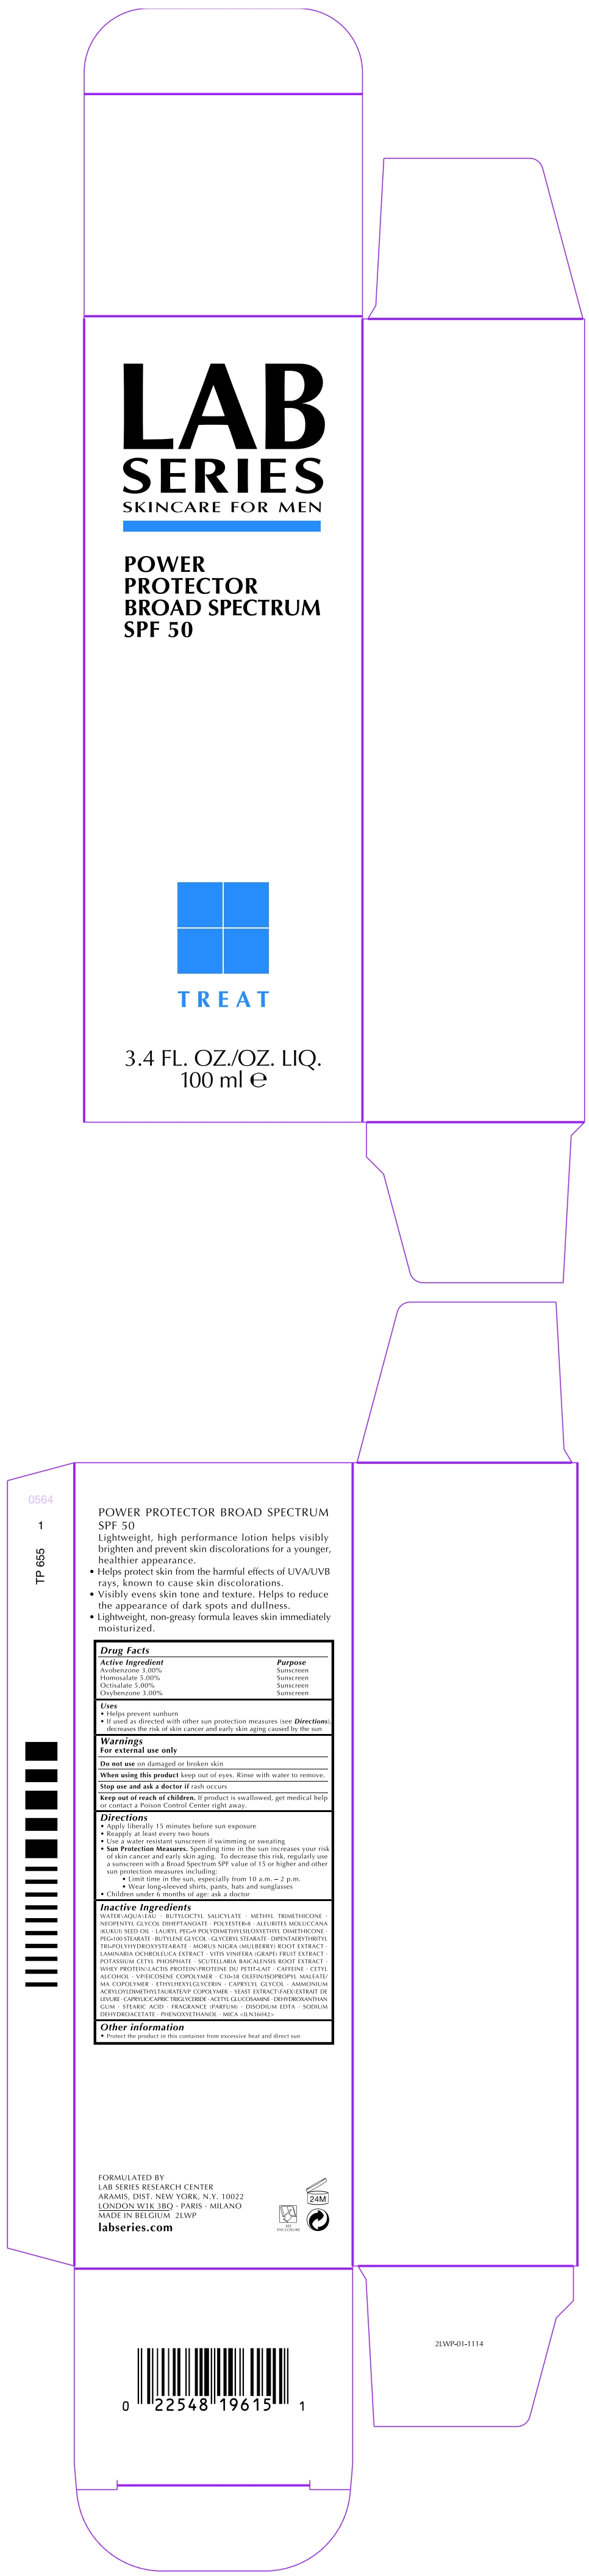 PRINCIPAL DISPLAY PANEL - 100 ml Tube Carton